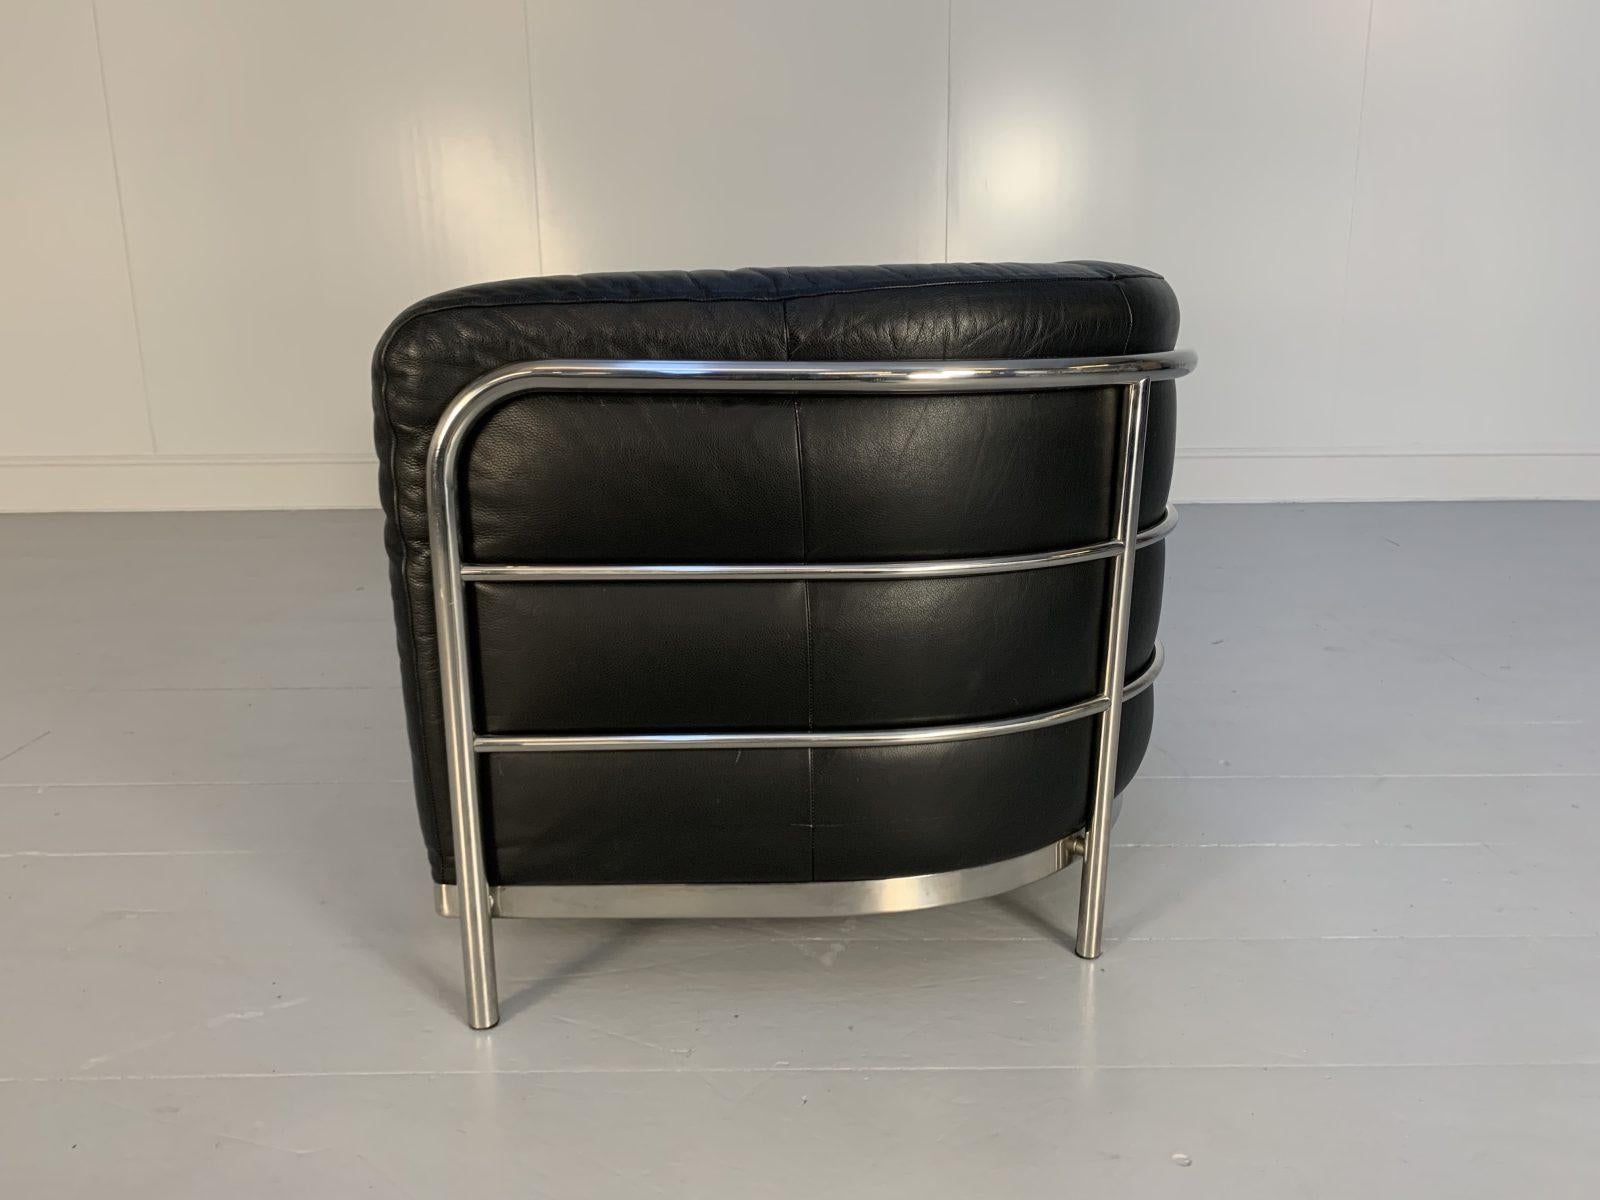 Zanotta “Onda” Sofa – 2-Seat – in Black “Scozia” Leather and Chrome For Sale 5